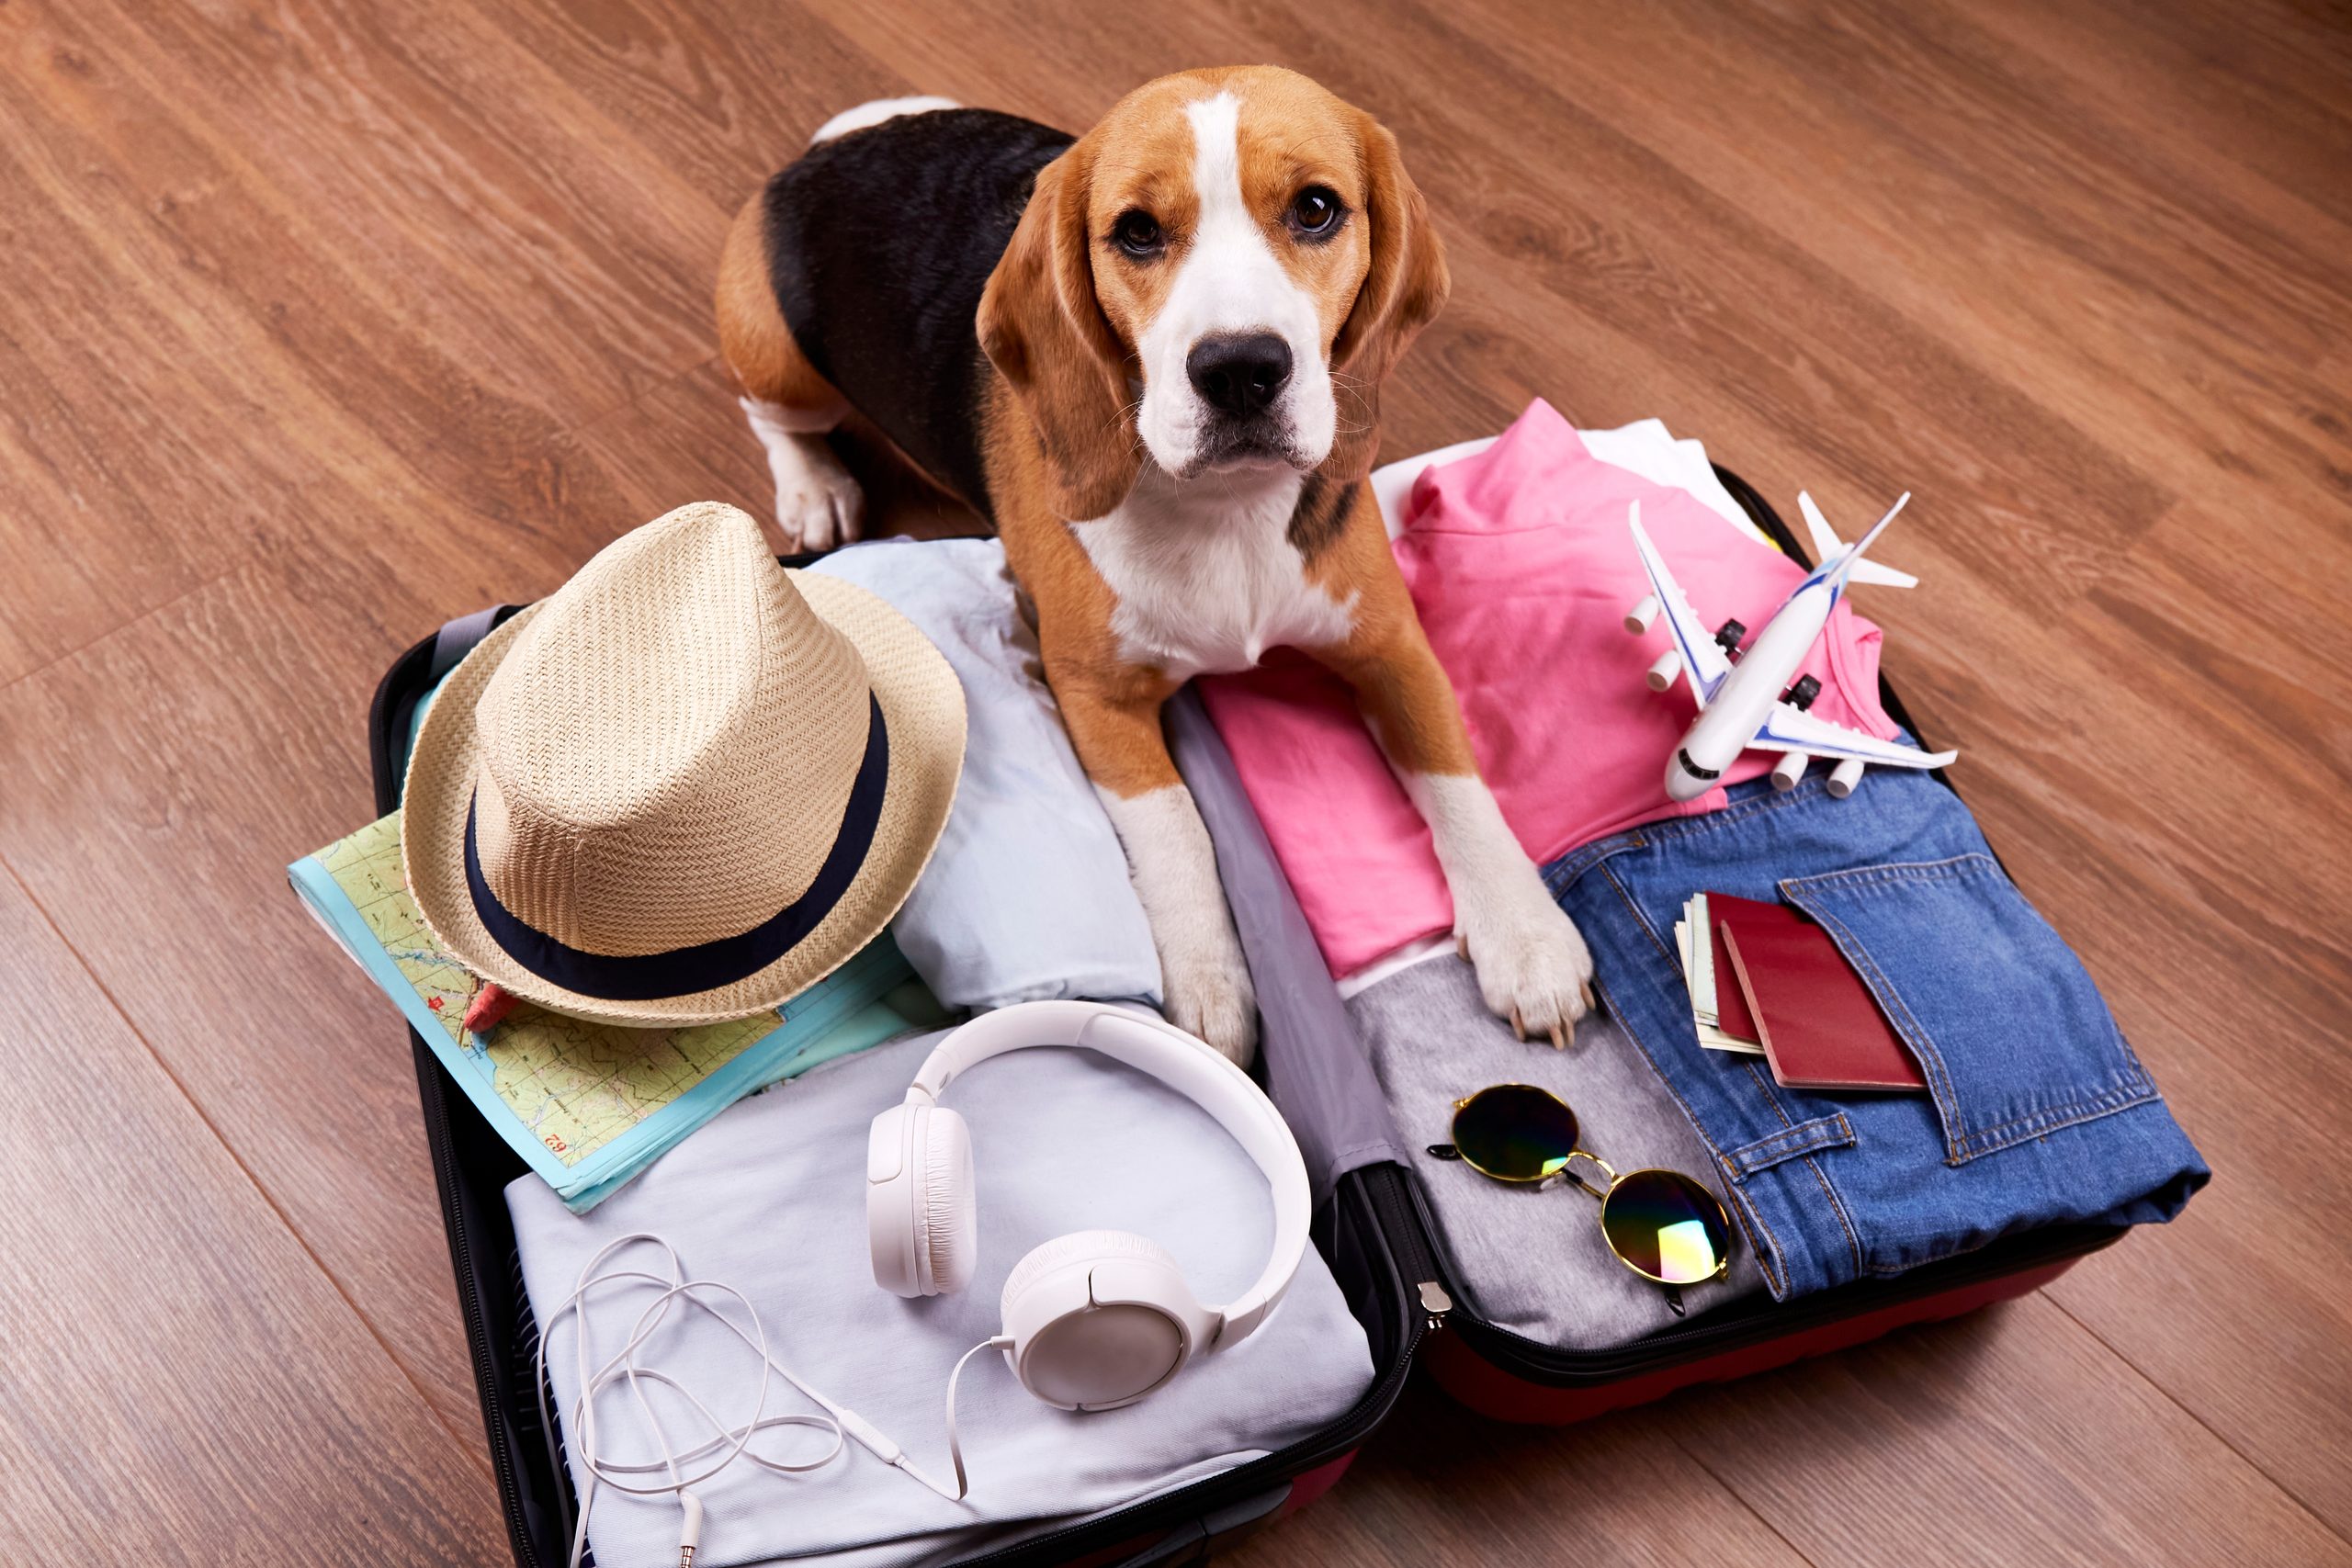 Ein Adlerhund neben einem offenen Koffer mit Kleidung und Urlaubsartikeln. Sommerreisen, Vorbereitung der Reise, Verpackung des Gepäcks.